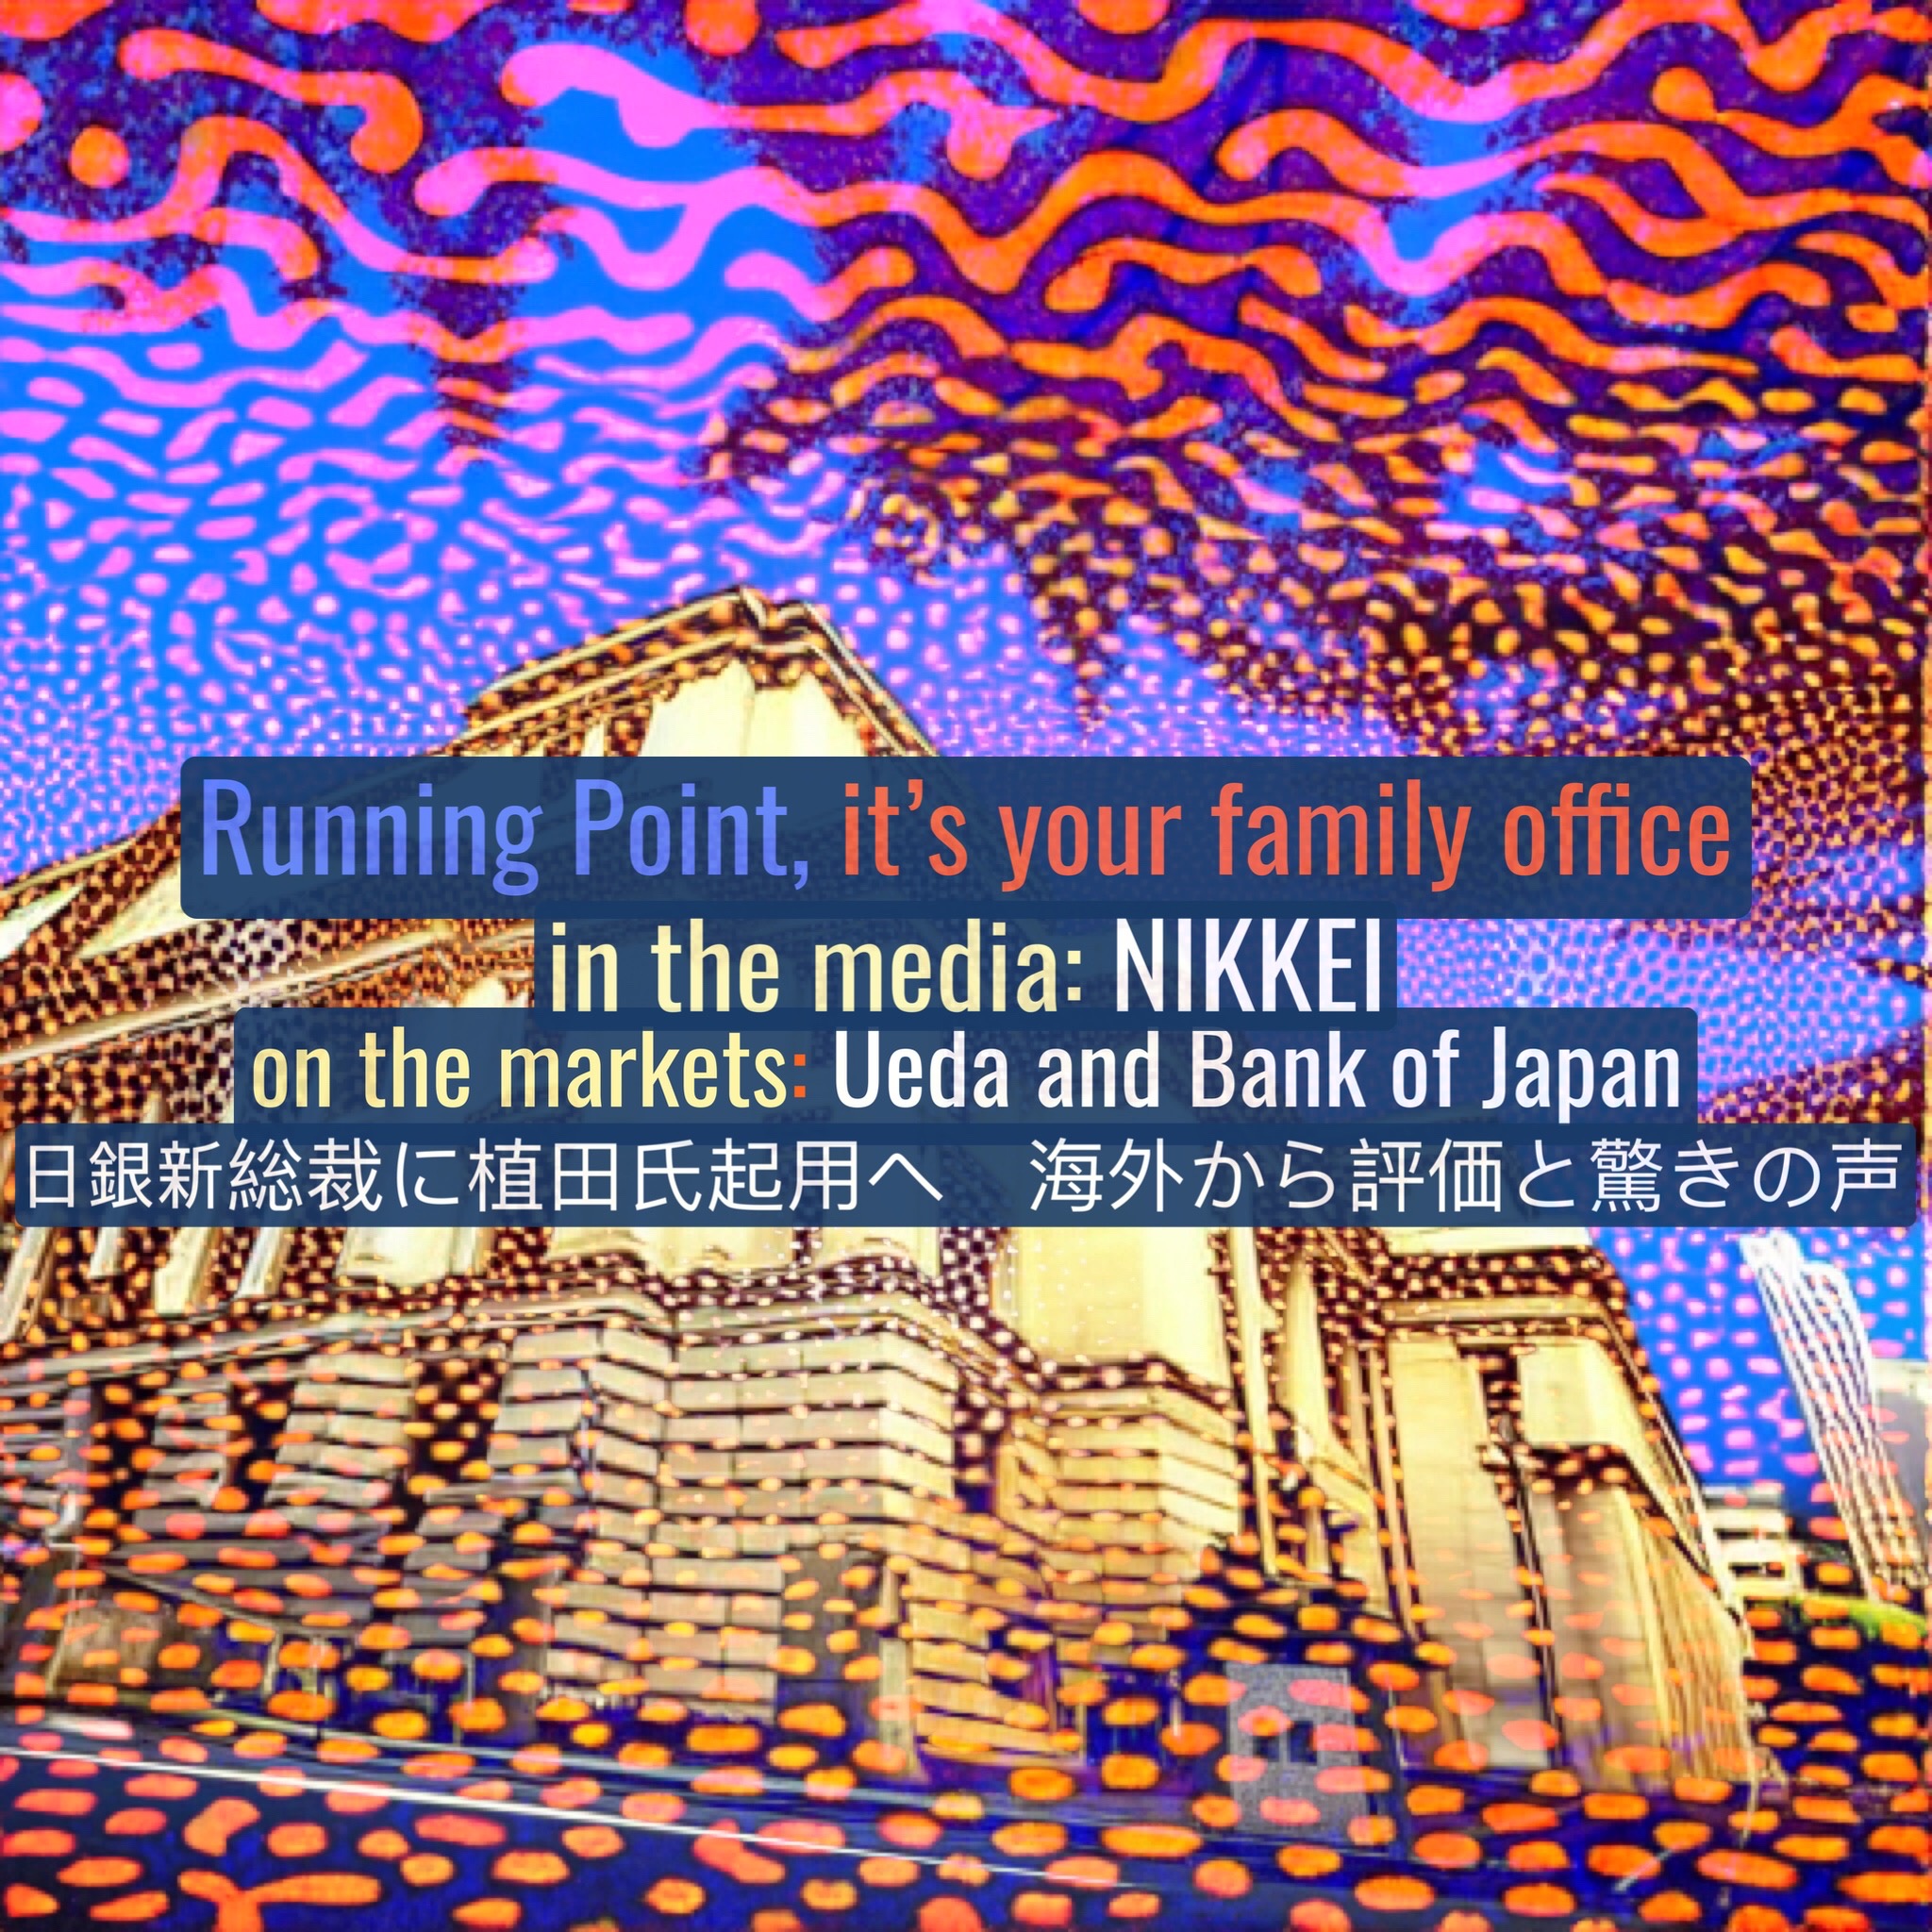 NIKKEI: Kazuo Ueda and the Bank of Japan